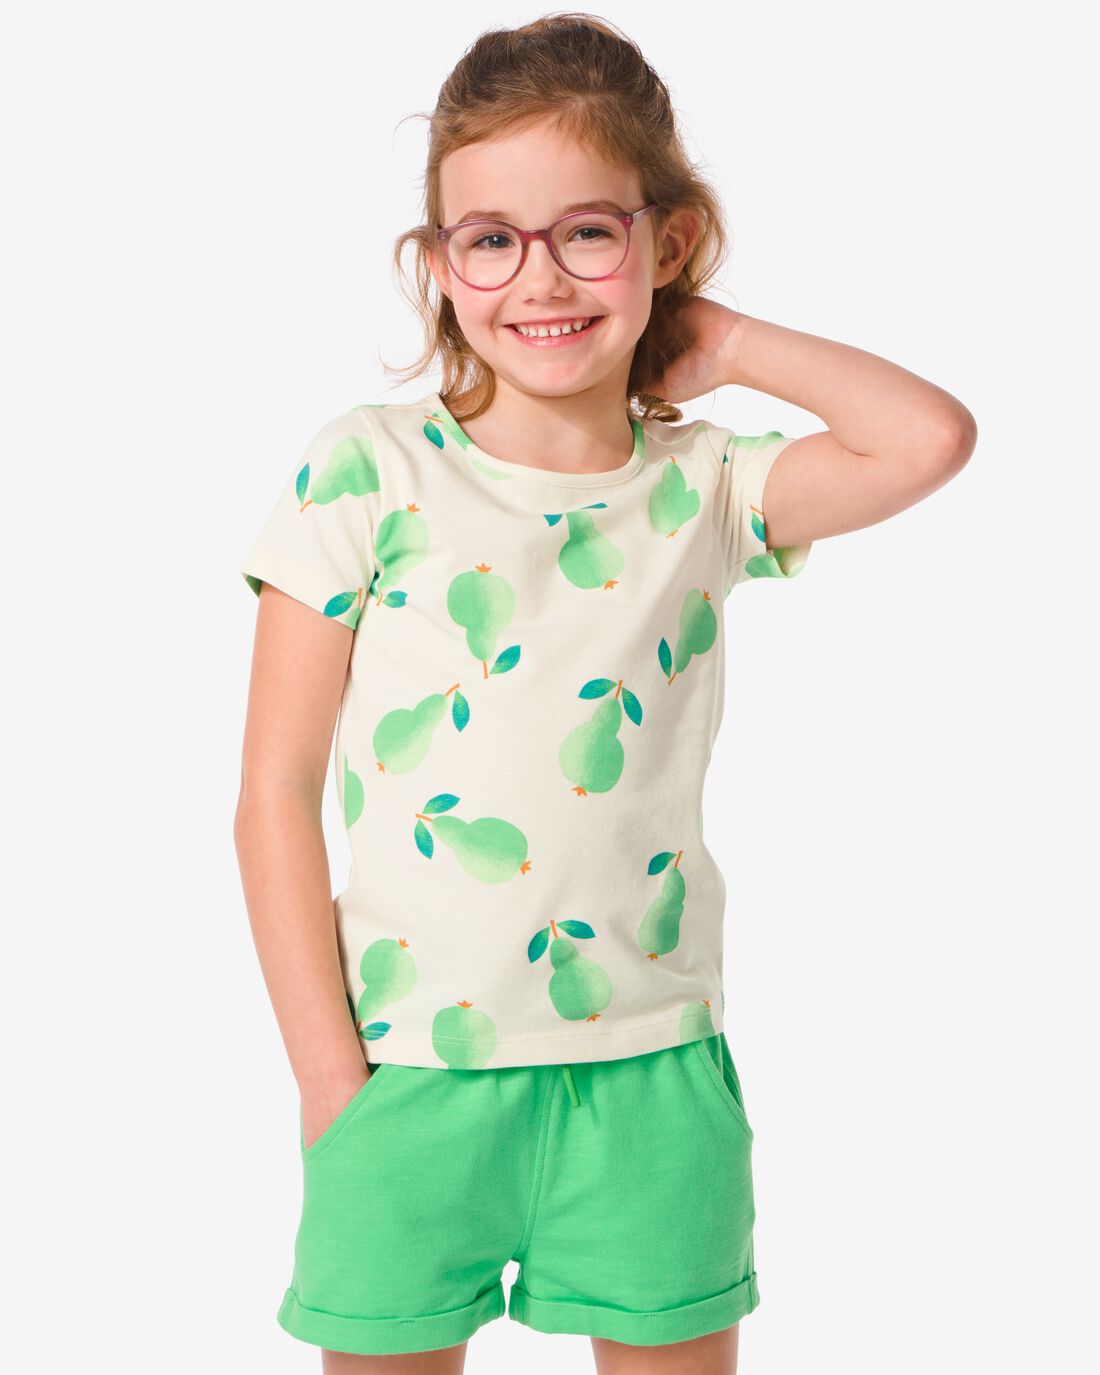 HEMA Kinder T-shirt Met Peren Groen (groen)